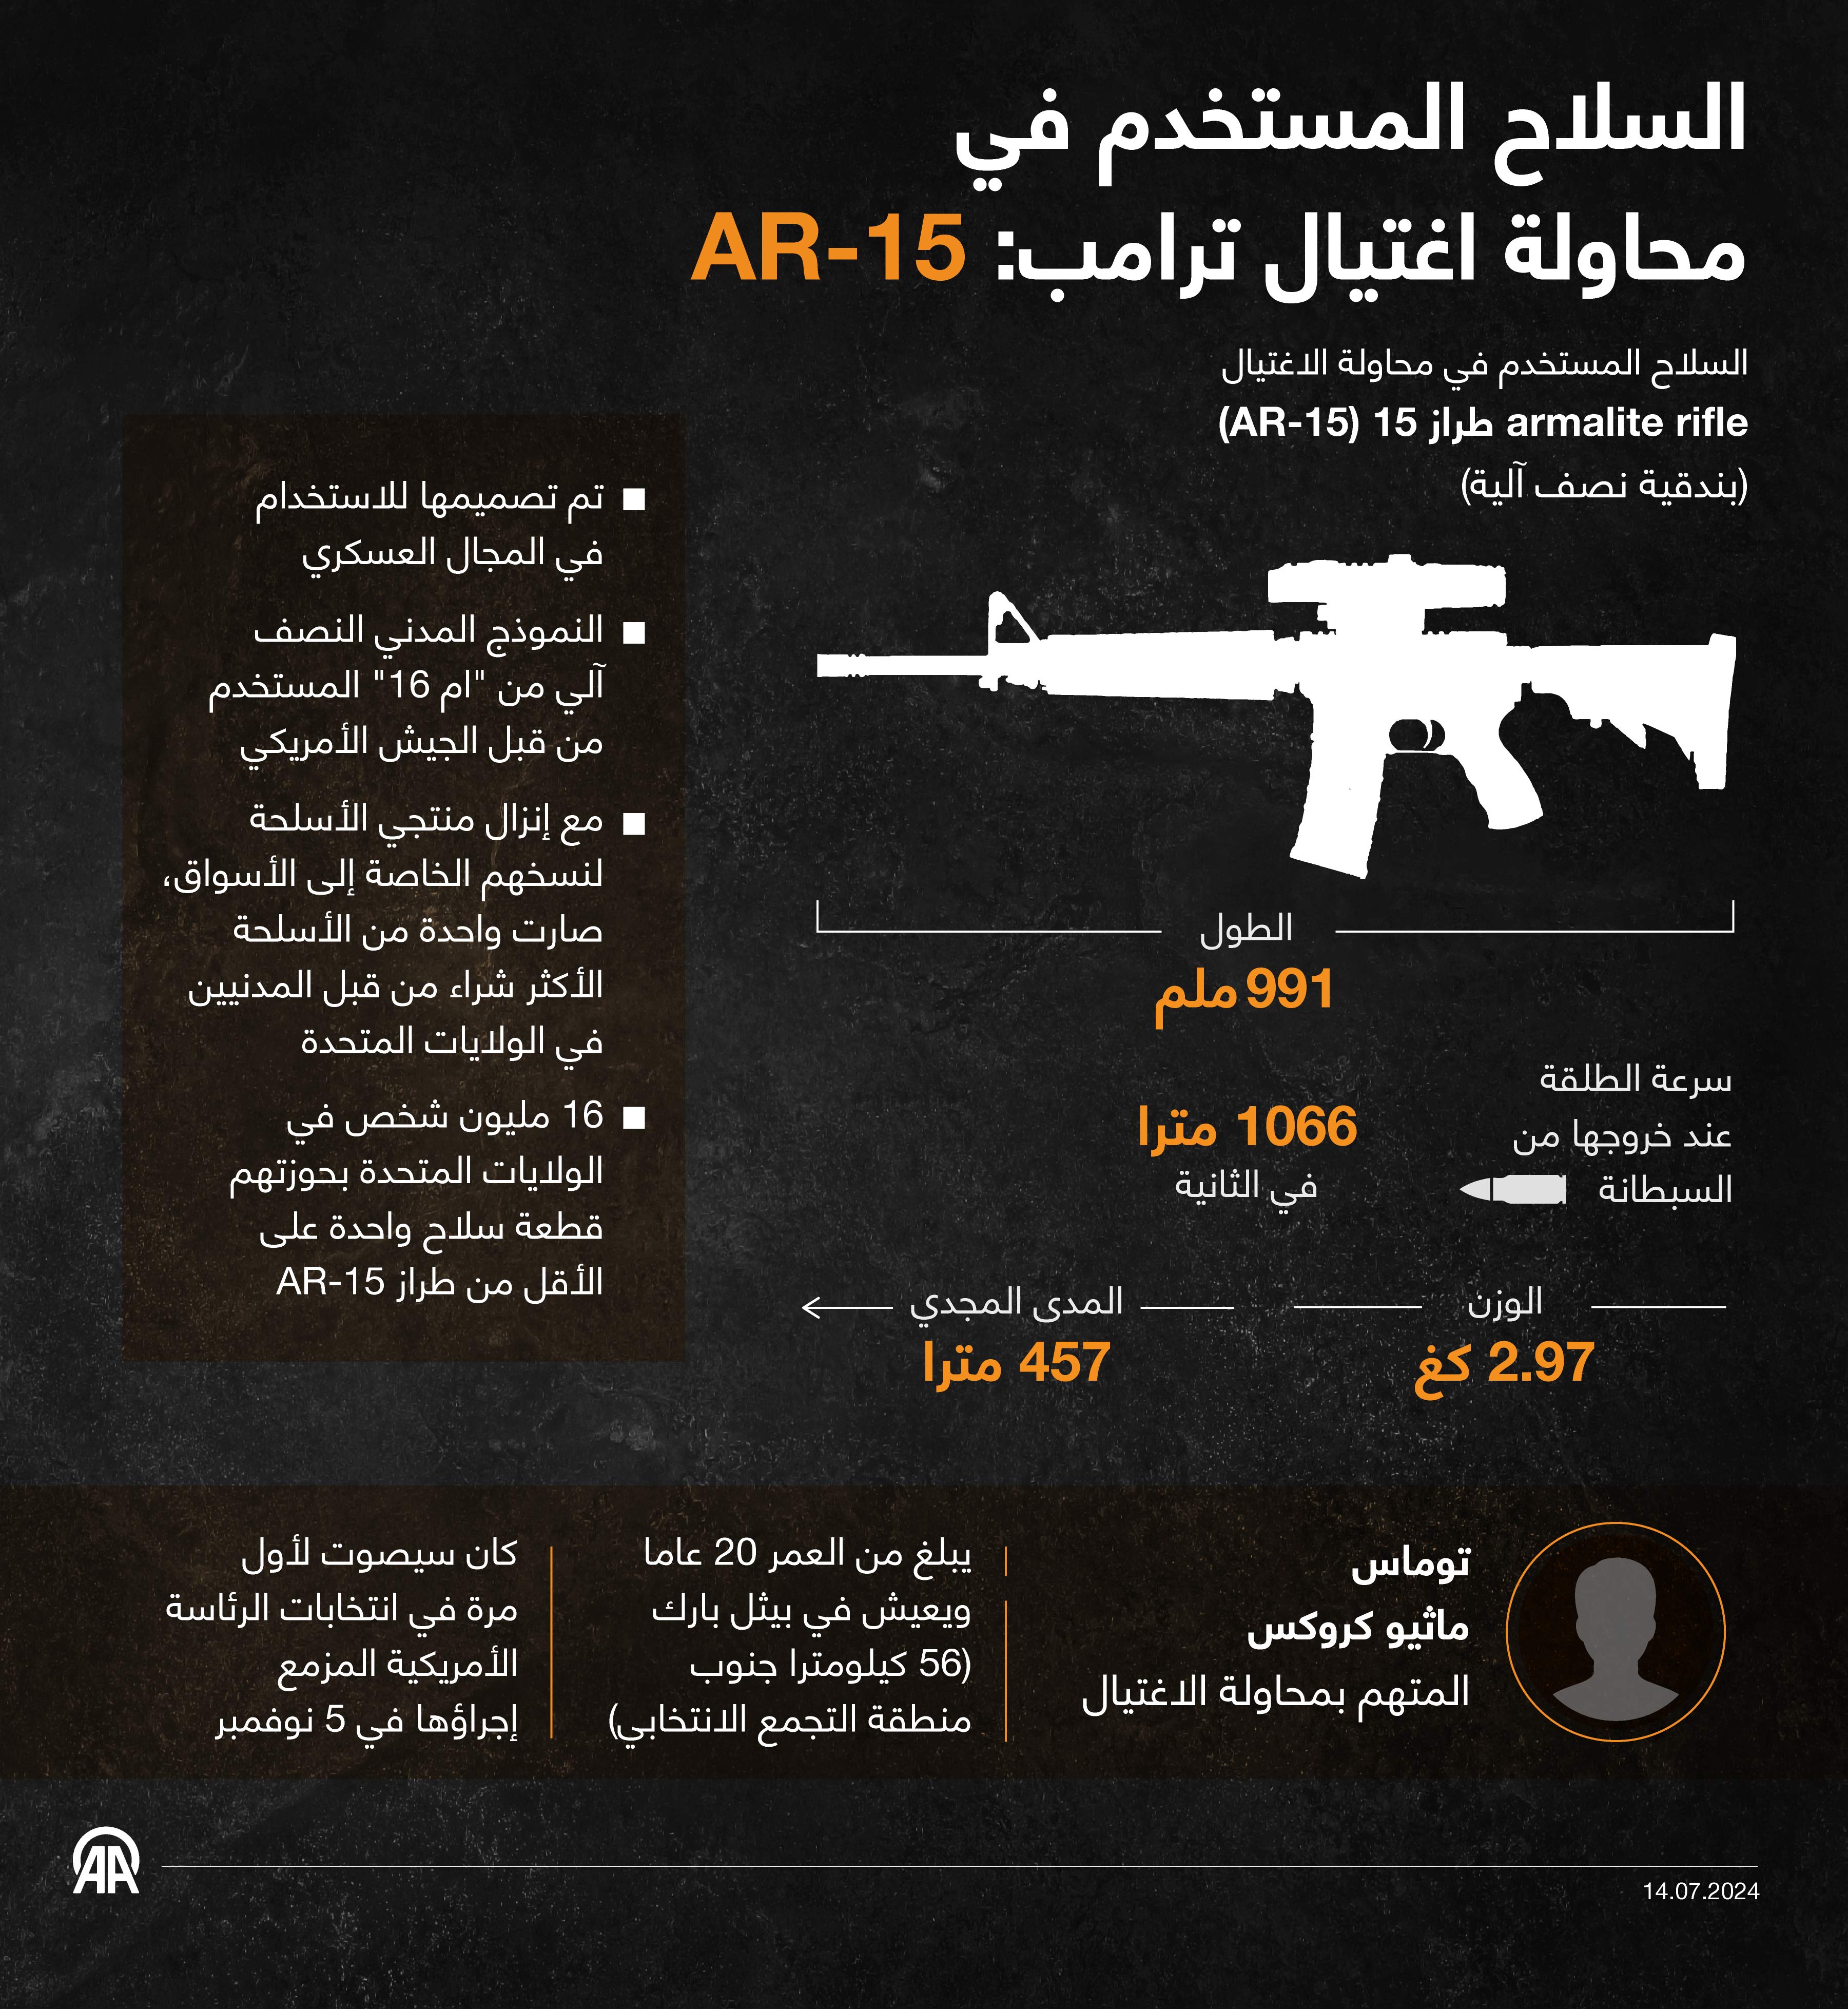 السلاح المستخدم في محاولة اغتيال ترامب: AR-15